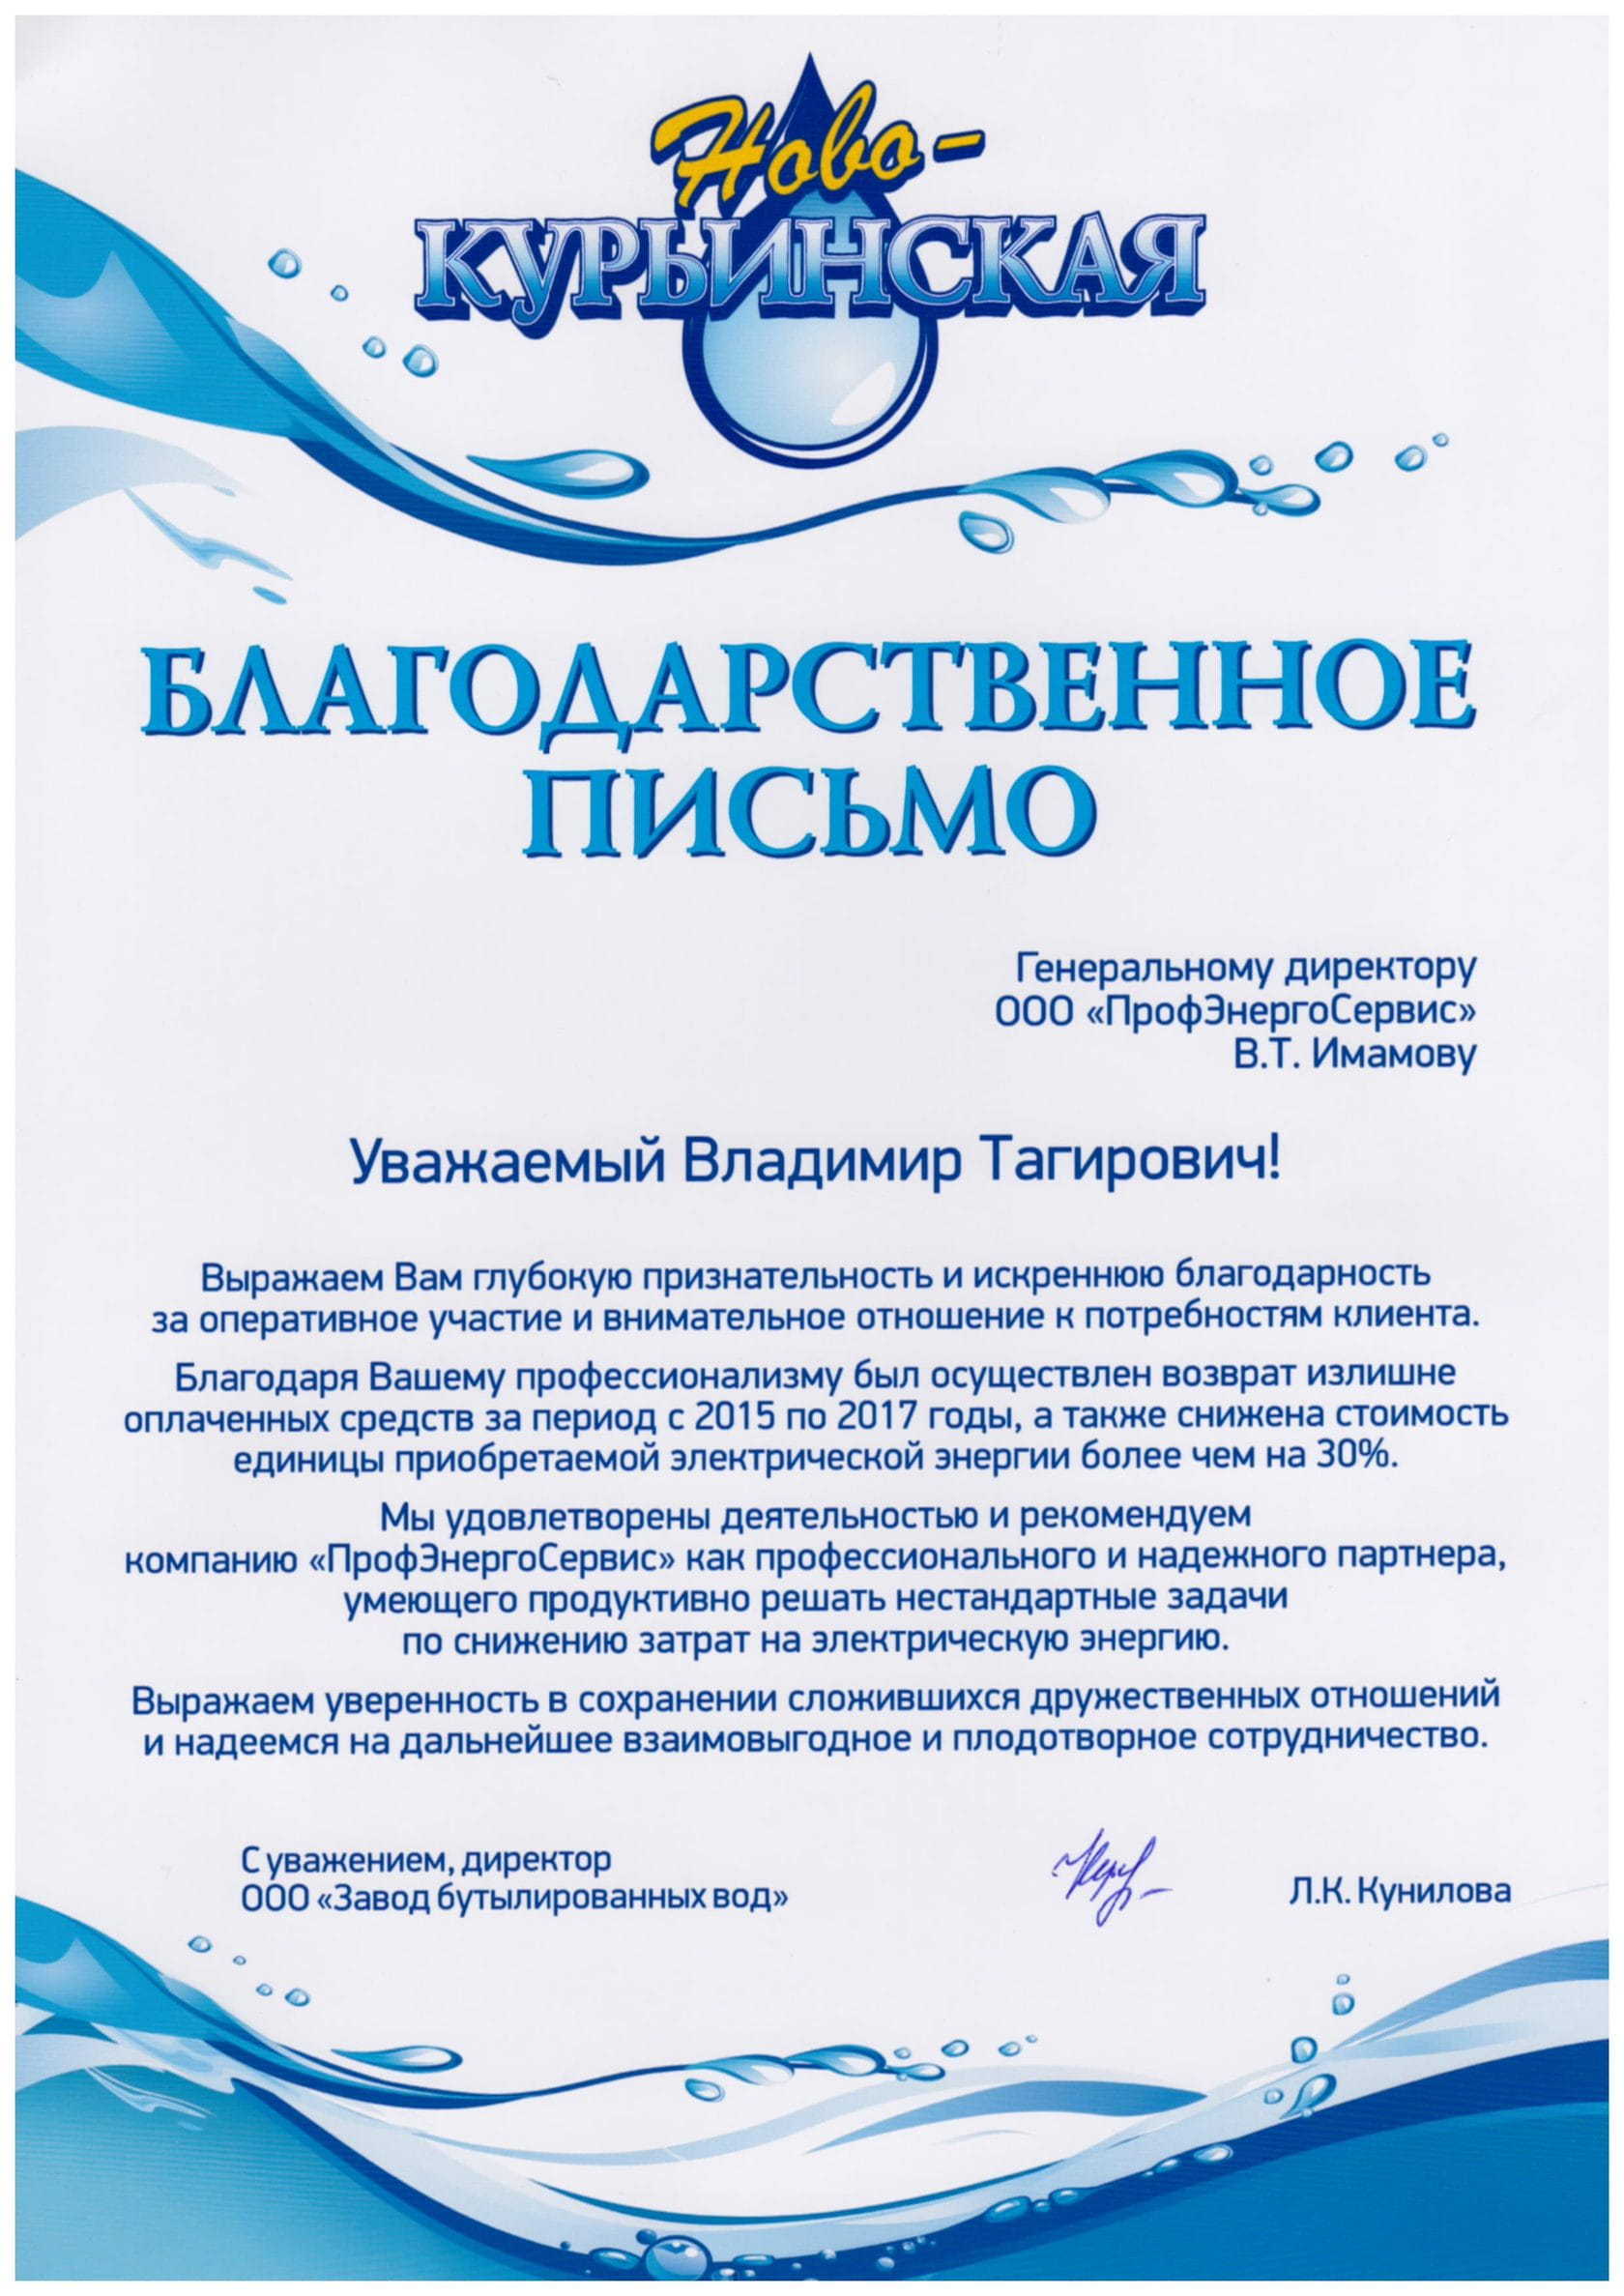 Отзыв ООО "Завод бутылированных вод" (Ново-Курьинская вода)